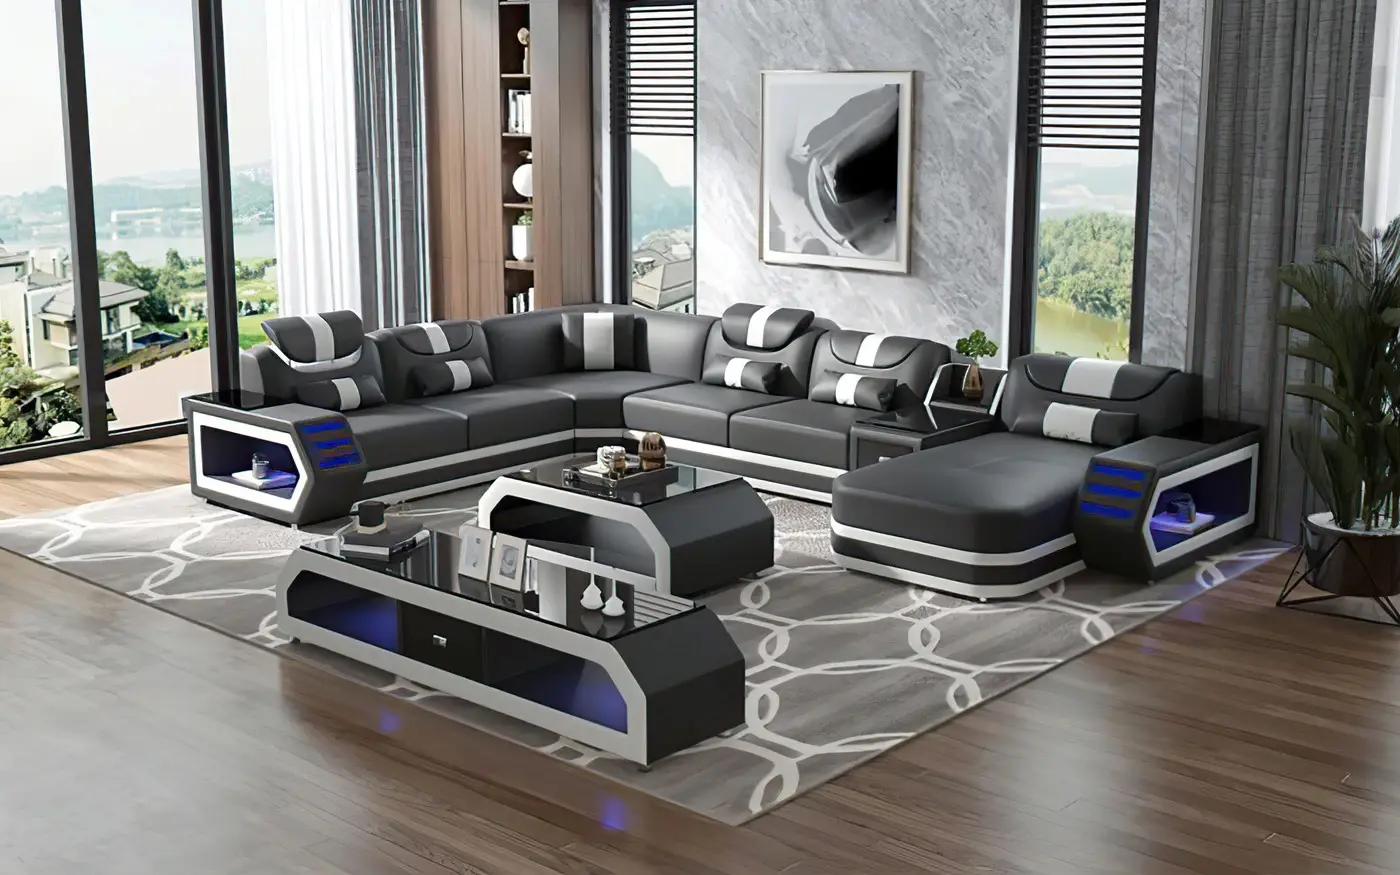 Moderne weiße Leder Schnitts ofa Set Möbel Sofa Wohnzimmer möbel mit LED-Licht